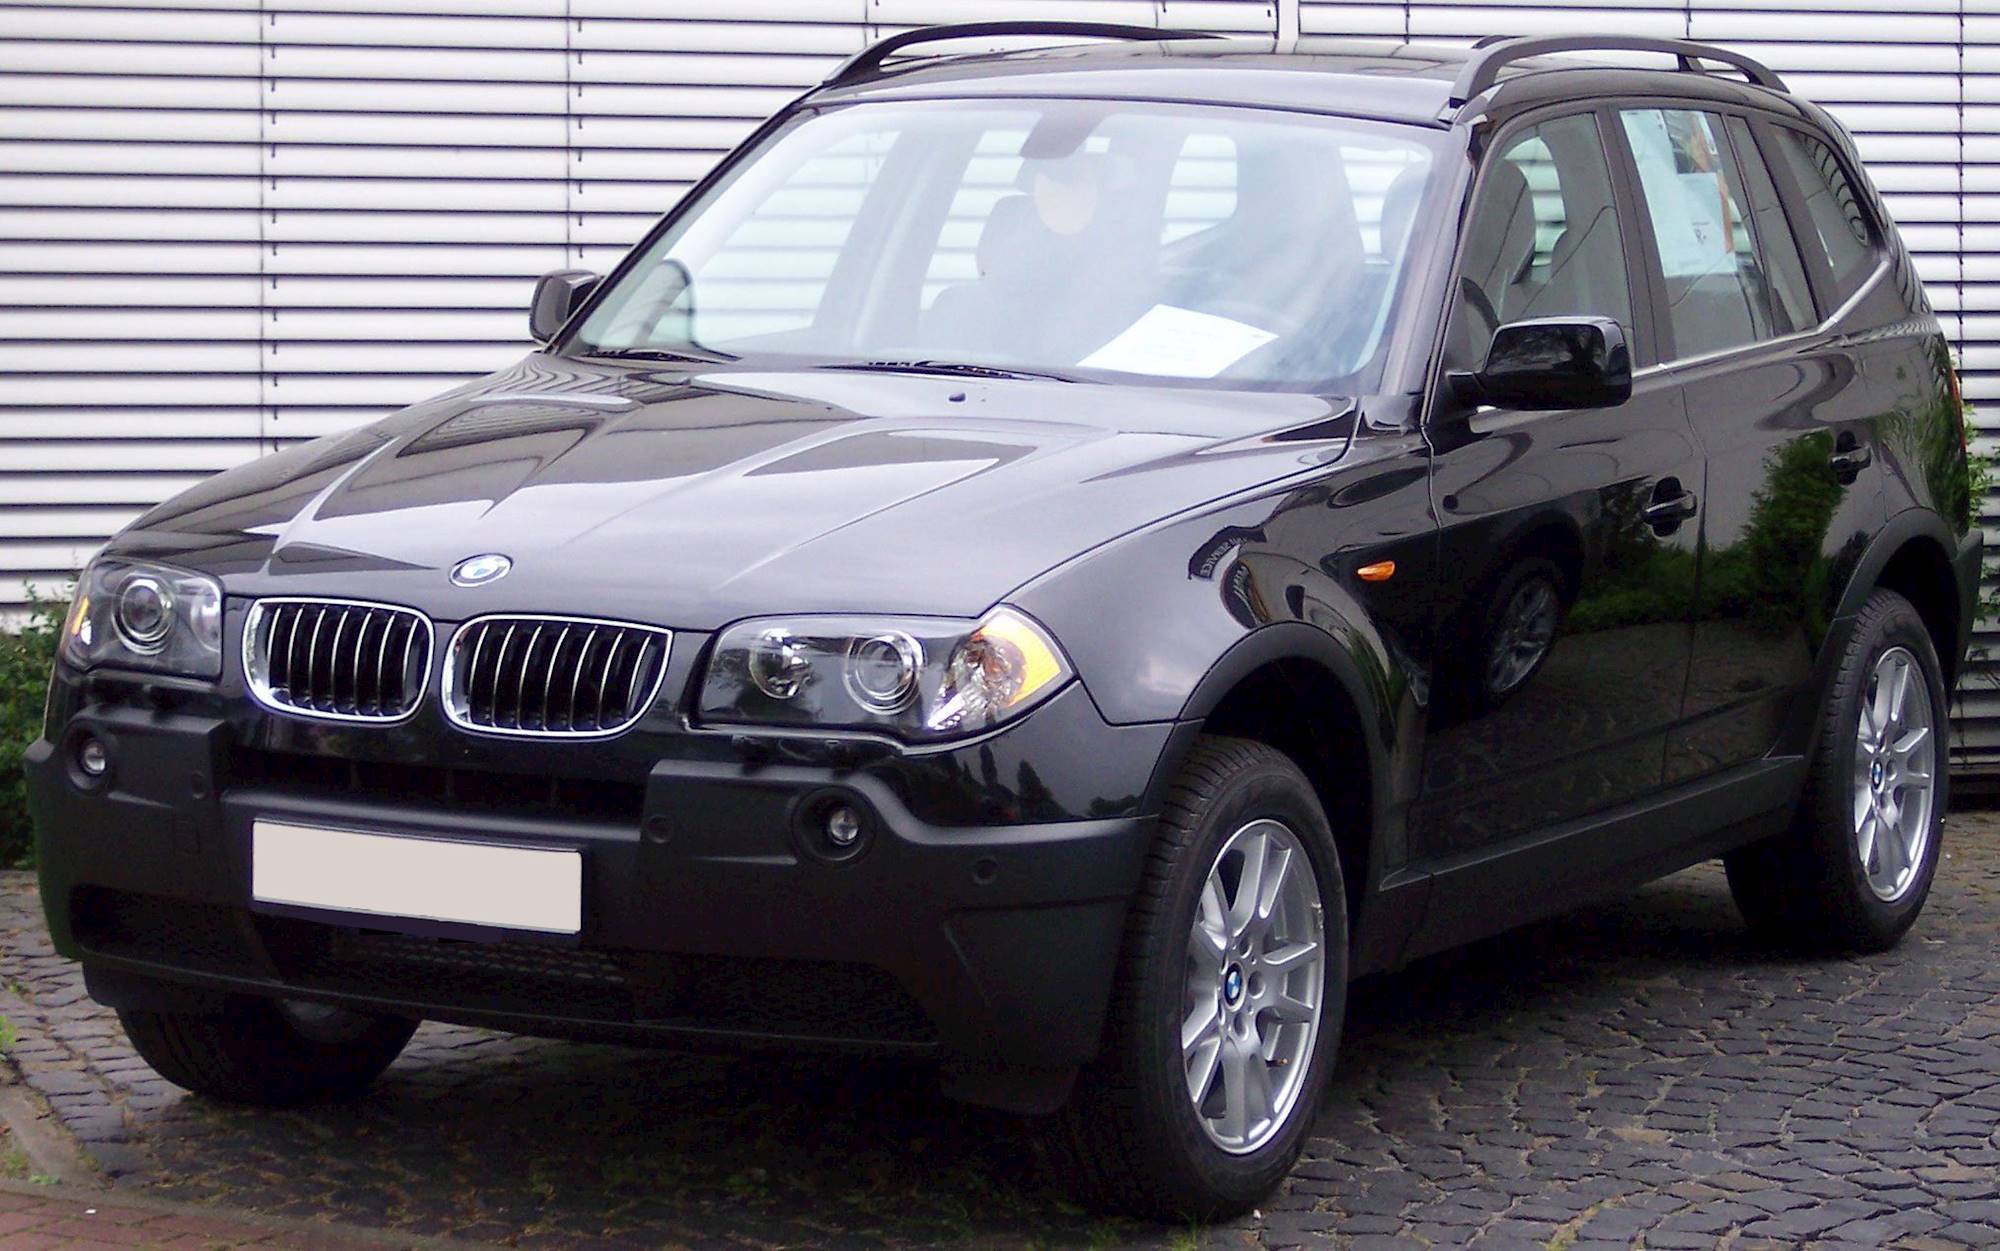 2005 BMW X3 2.5i - 4dr SUV 2.5L AWD Manual